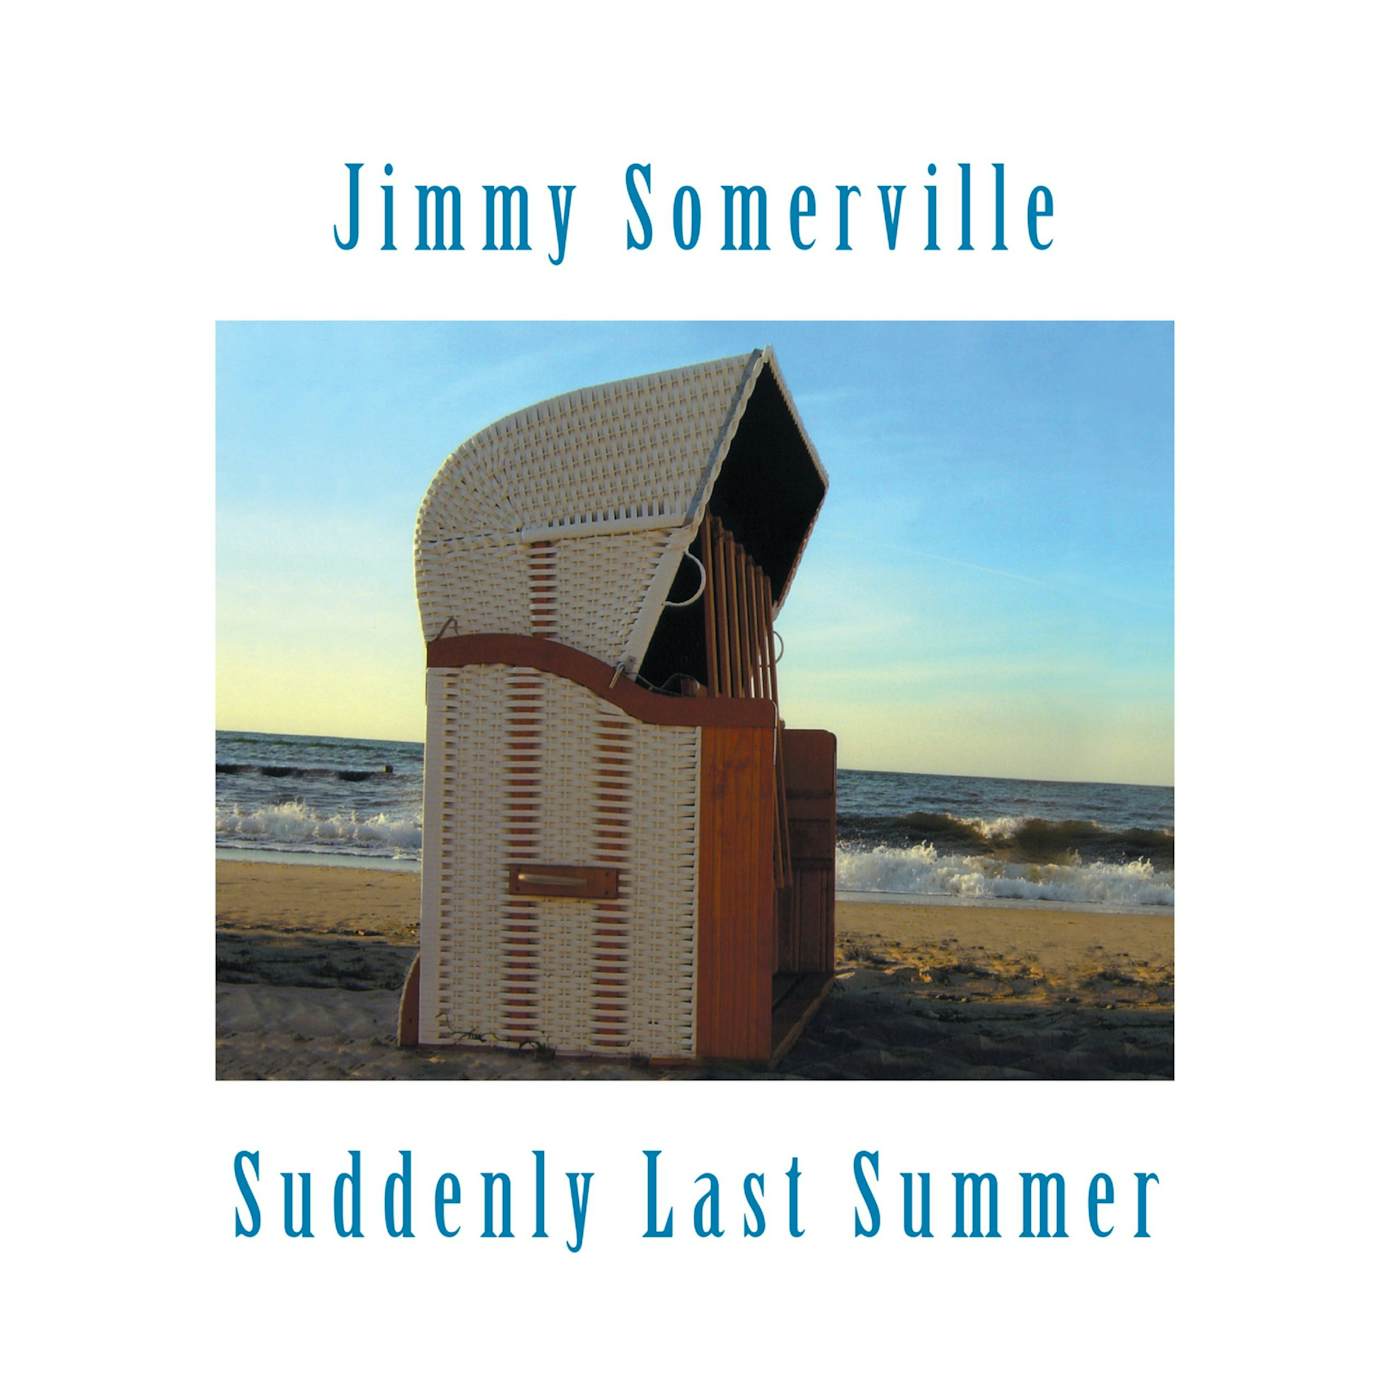 Jimmy Somerville Suddenly Last Summer: Limited Edition Vi Vinyl Record